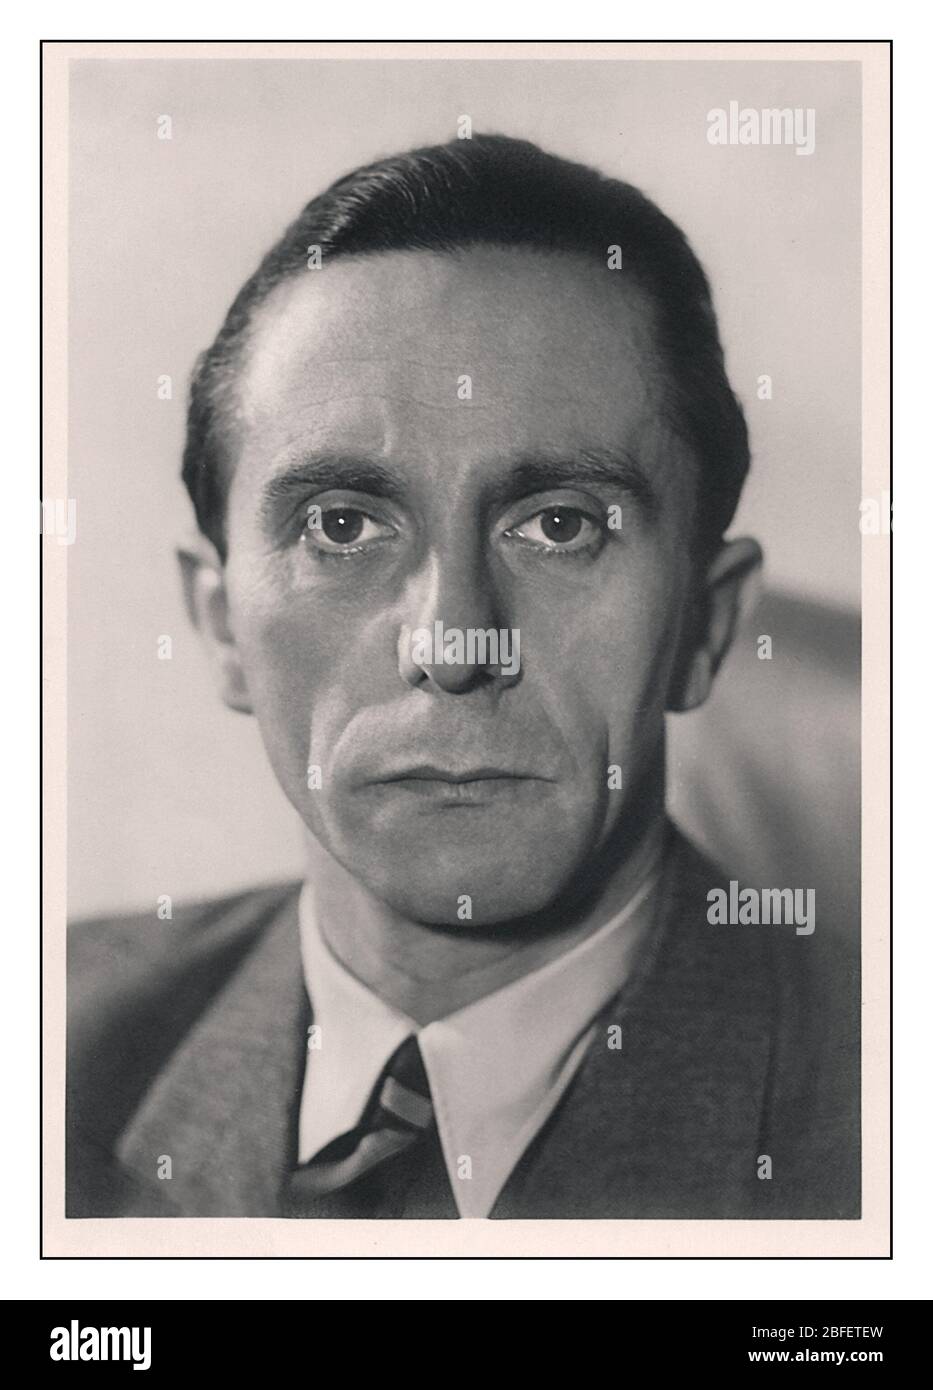 1930er Jahre Porträt von Paul Joseph Goebbels ein deutscher Nazi-Politiker und Reichspropagandaminister von Nazi-Deutschland von 1933 bis 1945. Er war einer der engsten und treuesten Mitarbeiter Adolf Hitlers und bekannt für seine Fähigkeiten im öffentlichen Sprechen und seinen zutiefst virulenten Antisemitismus, der in seinen öffentlich geäußerten Ansichten deutlich wurde. Beging 1945 Selbstmord mit Alliierten bei einem letzten Angriff auf Zentraldeutschland Stockfoto